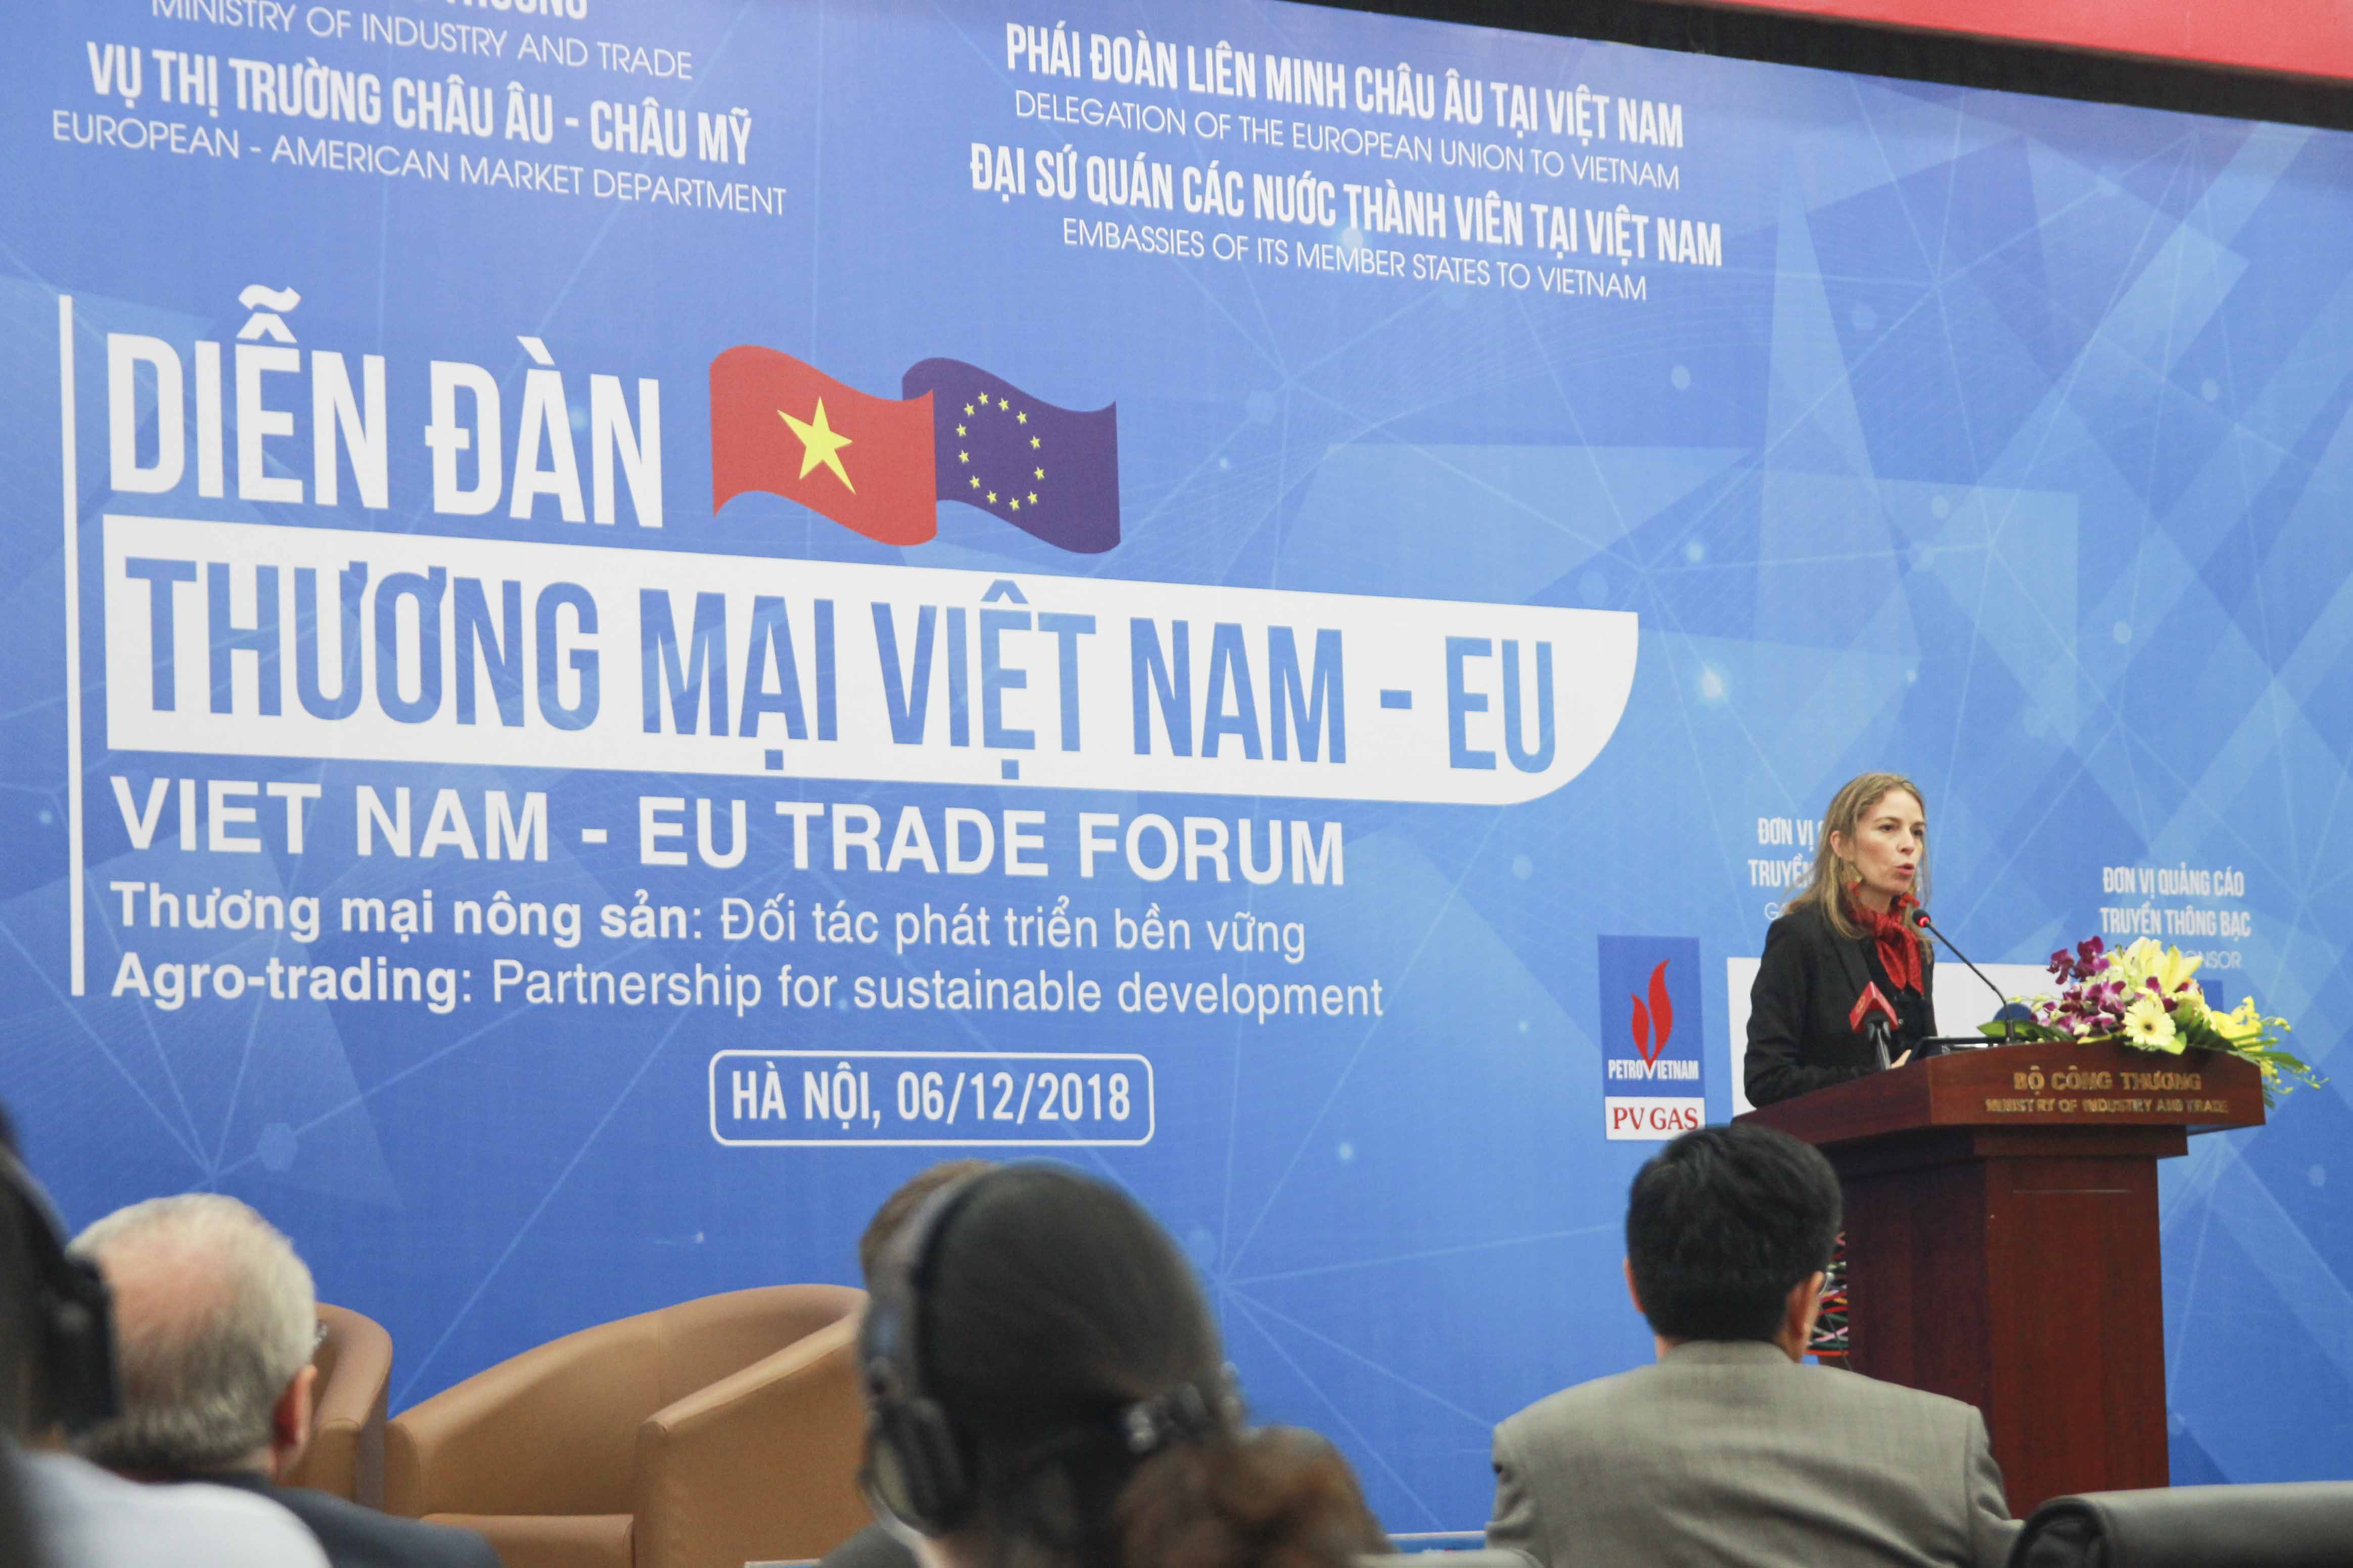 Bà Miriam Garcia Ferrer - Trưởng ban kinh tế và thương mại, Phái đoàn Liên minh châu Âu tại Việt Nam phát biểu tại Diễn đàn Thương mại Việt Nam – EU